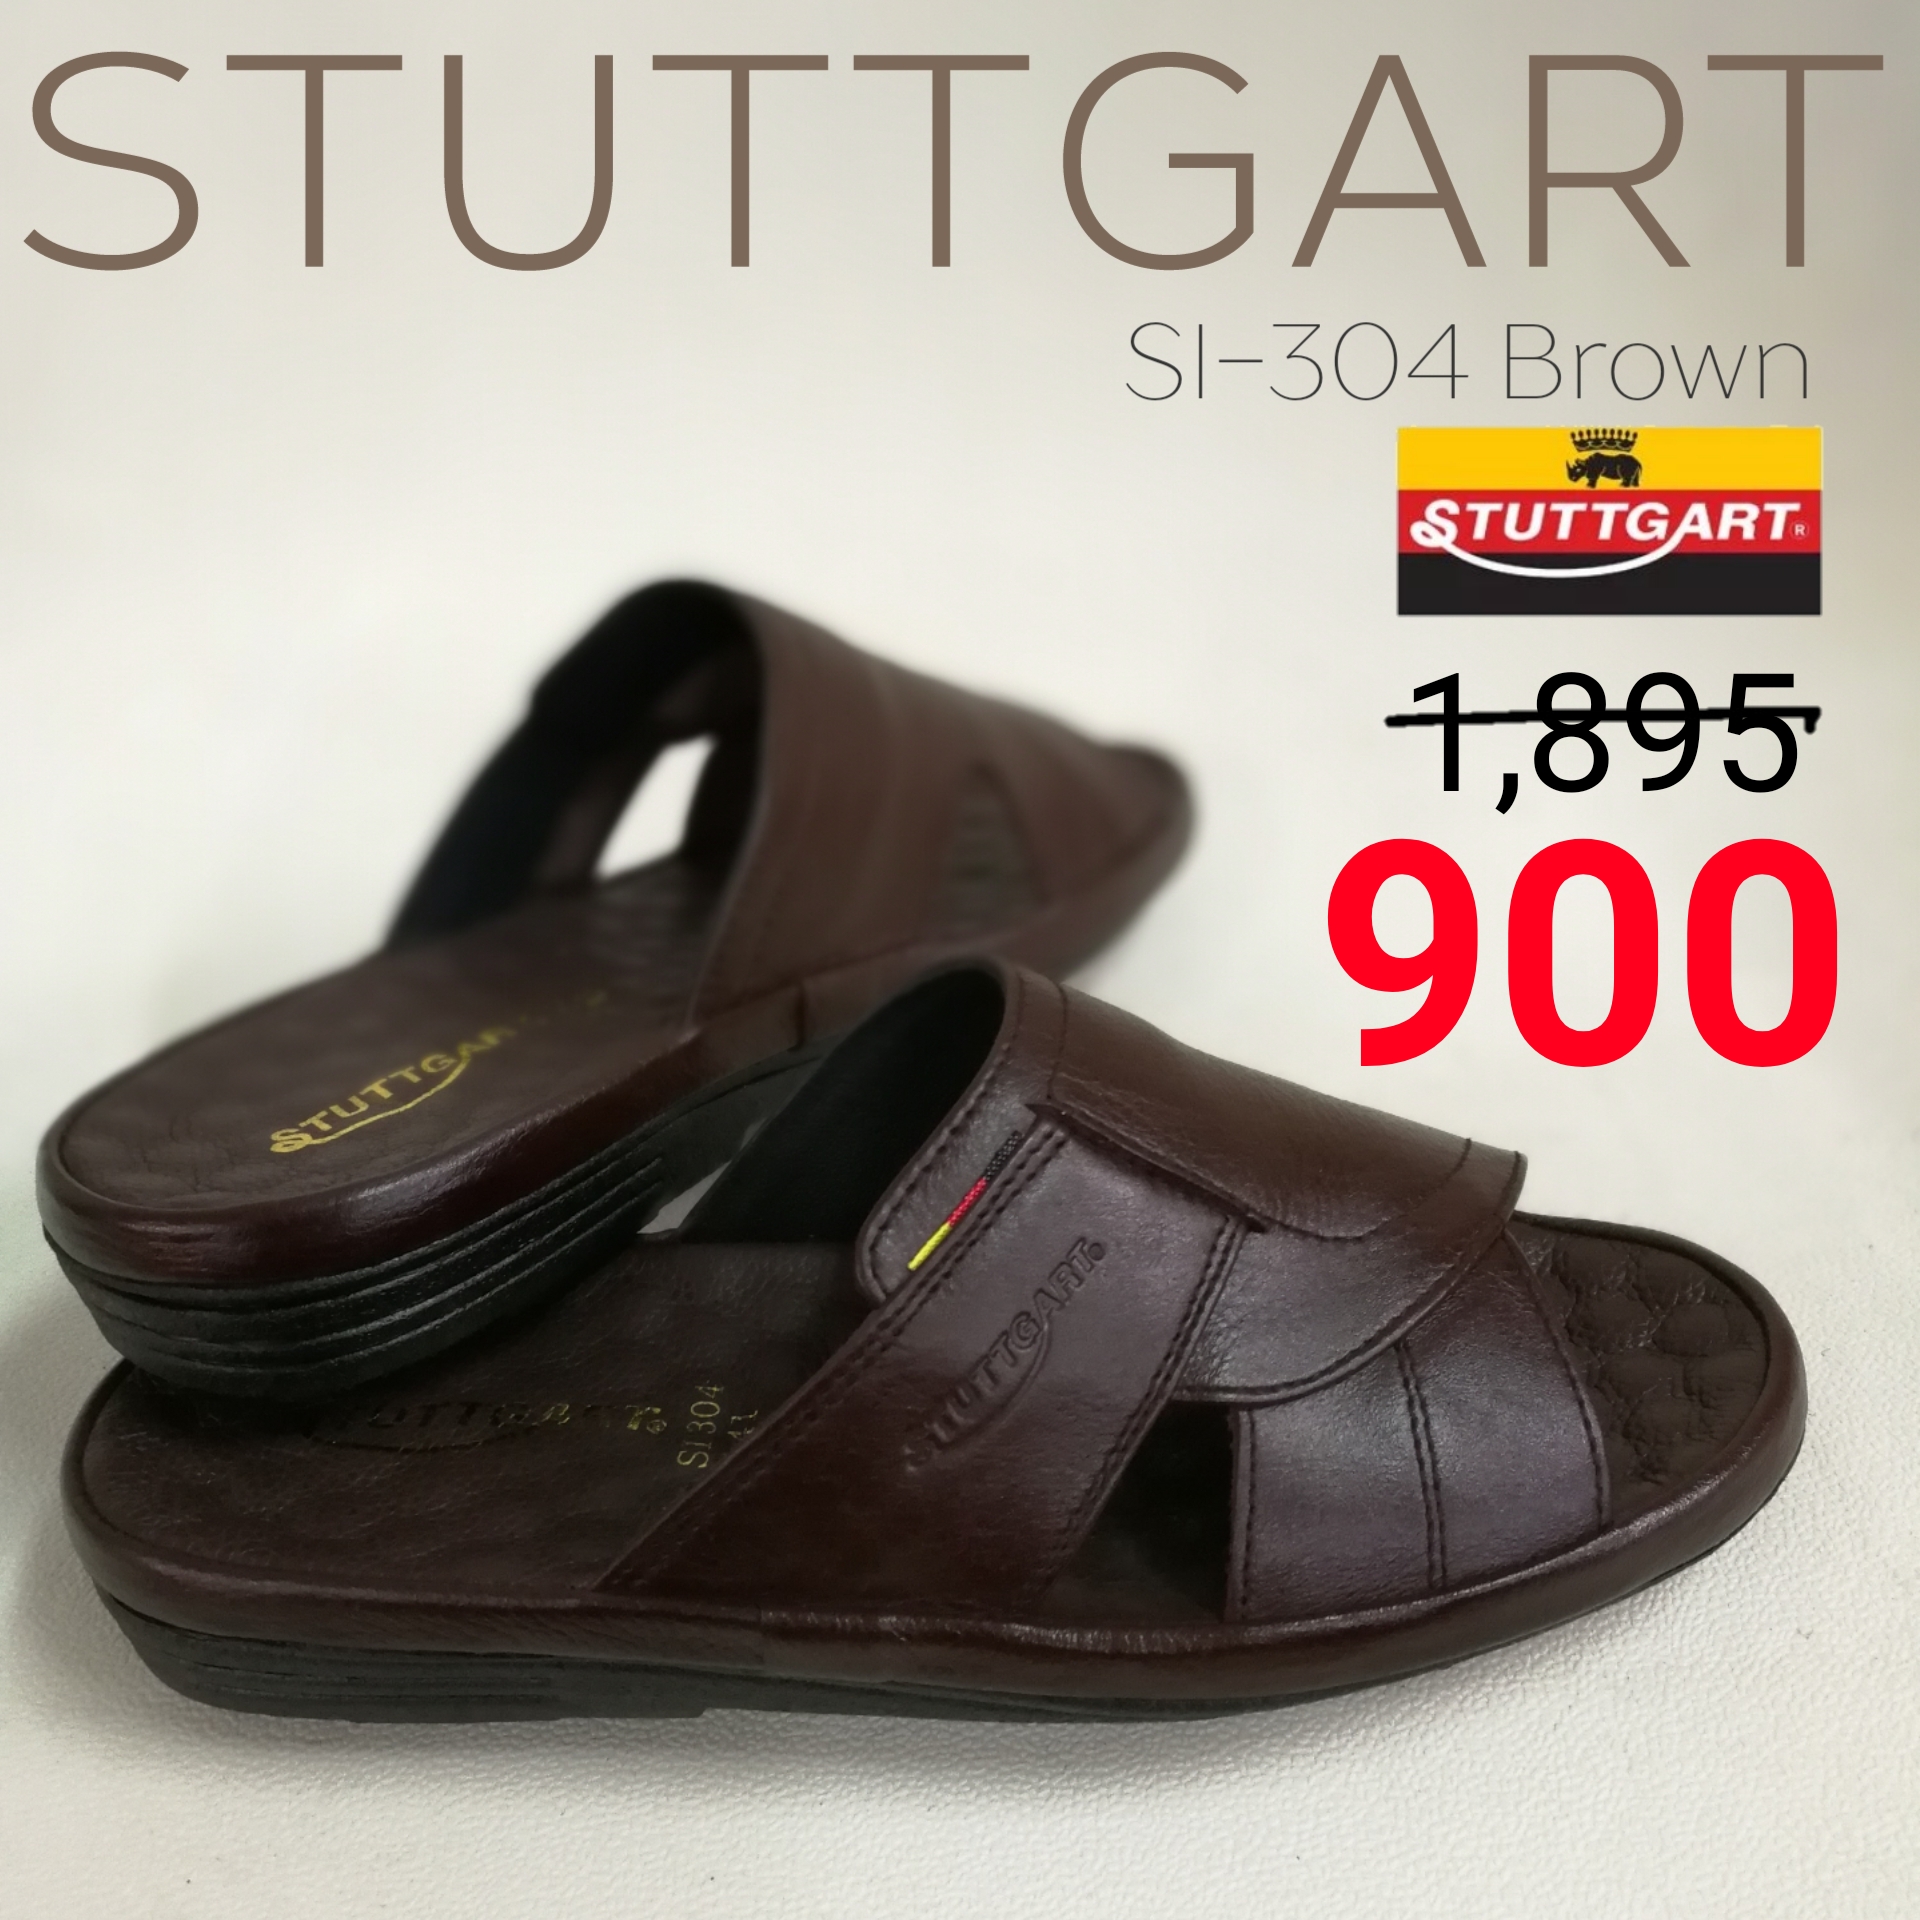 รองเท้าผู้ชาย STUTTGART SI-304 สี น้ำตาล ขนาด EU 44 สี น้ำตาลขนาด EU 44